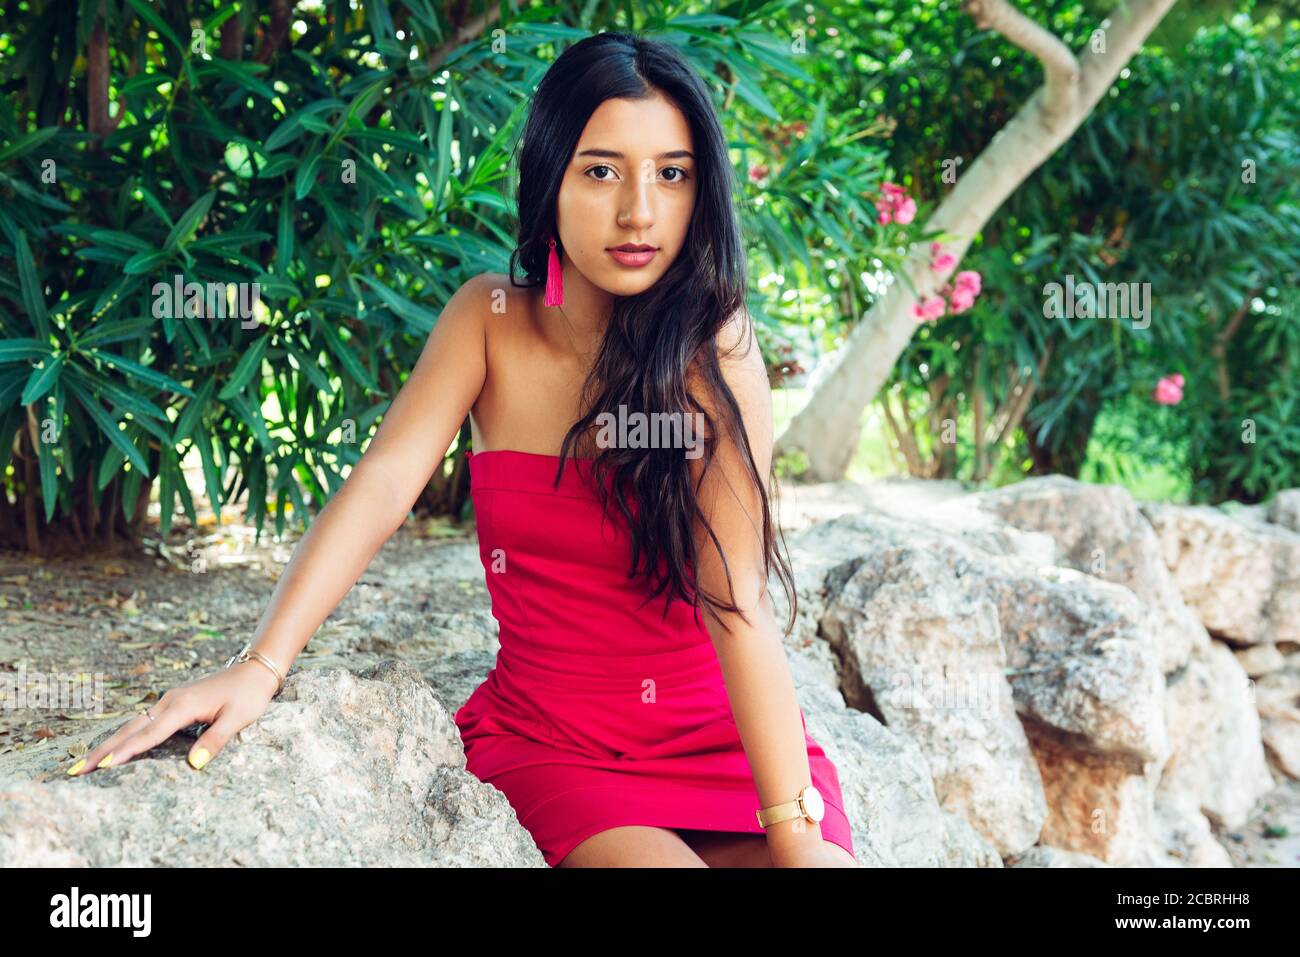 Giovane ragazza latina con lunghi capelli neri e abito rosso, in una zona di vegetazione e rocce. Foto Stock